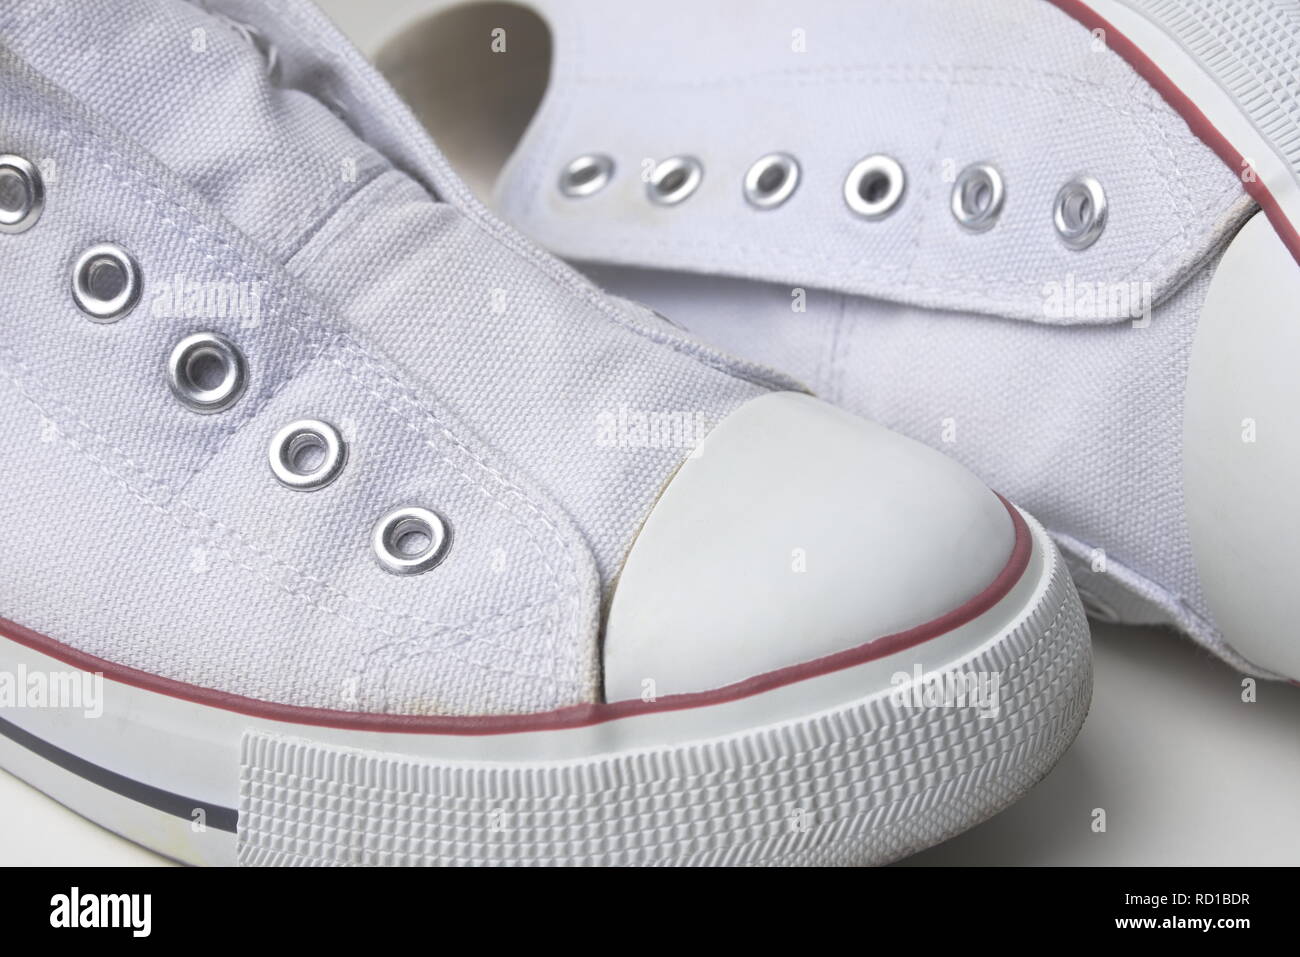 Paar weiße Schnürlos Sneaker mit roten Streifen Closeup Stockfotografie -  Alamy